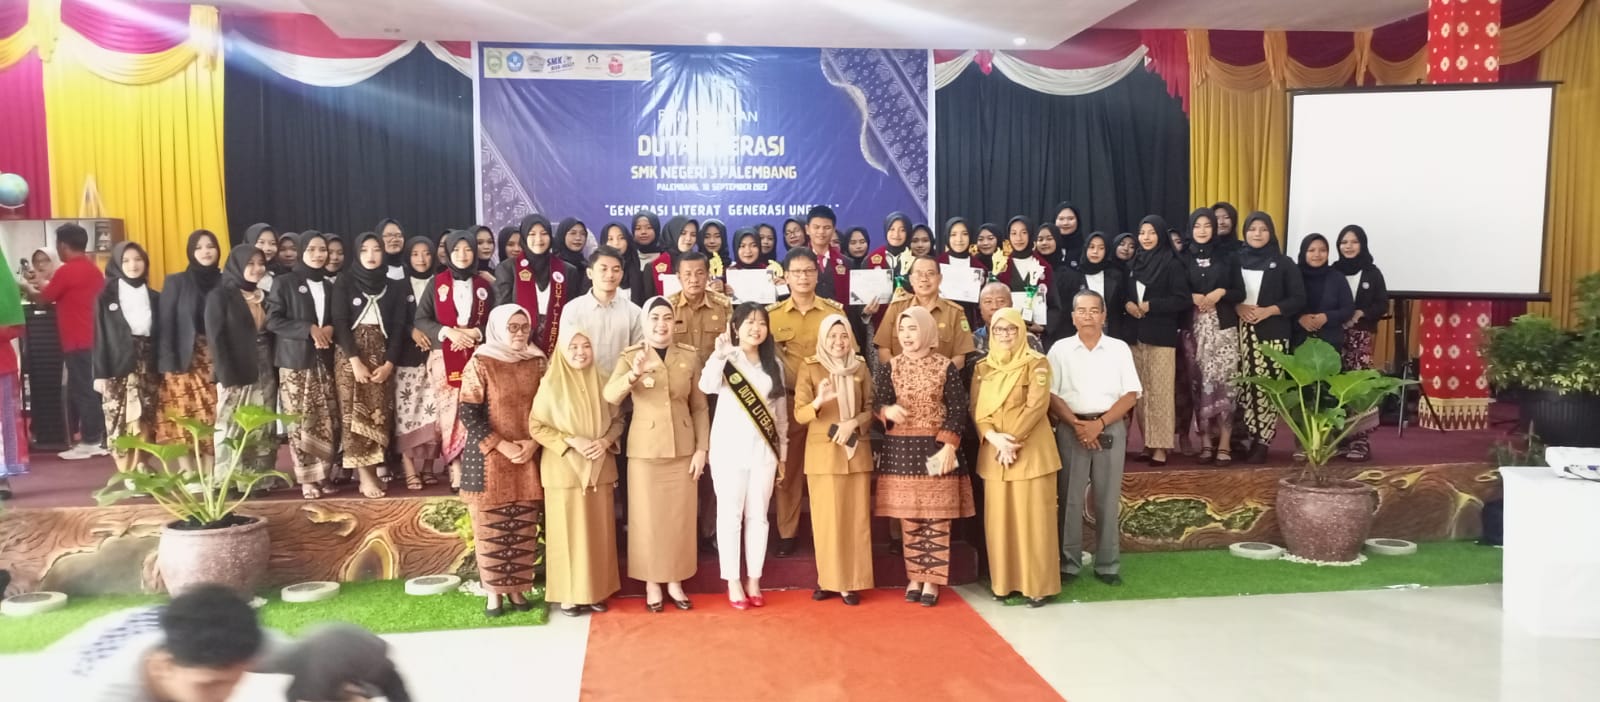 Kak Iva Kukuhkan Duta Literasi Sekolah Terbanyak di Kota Palembang